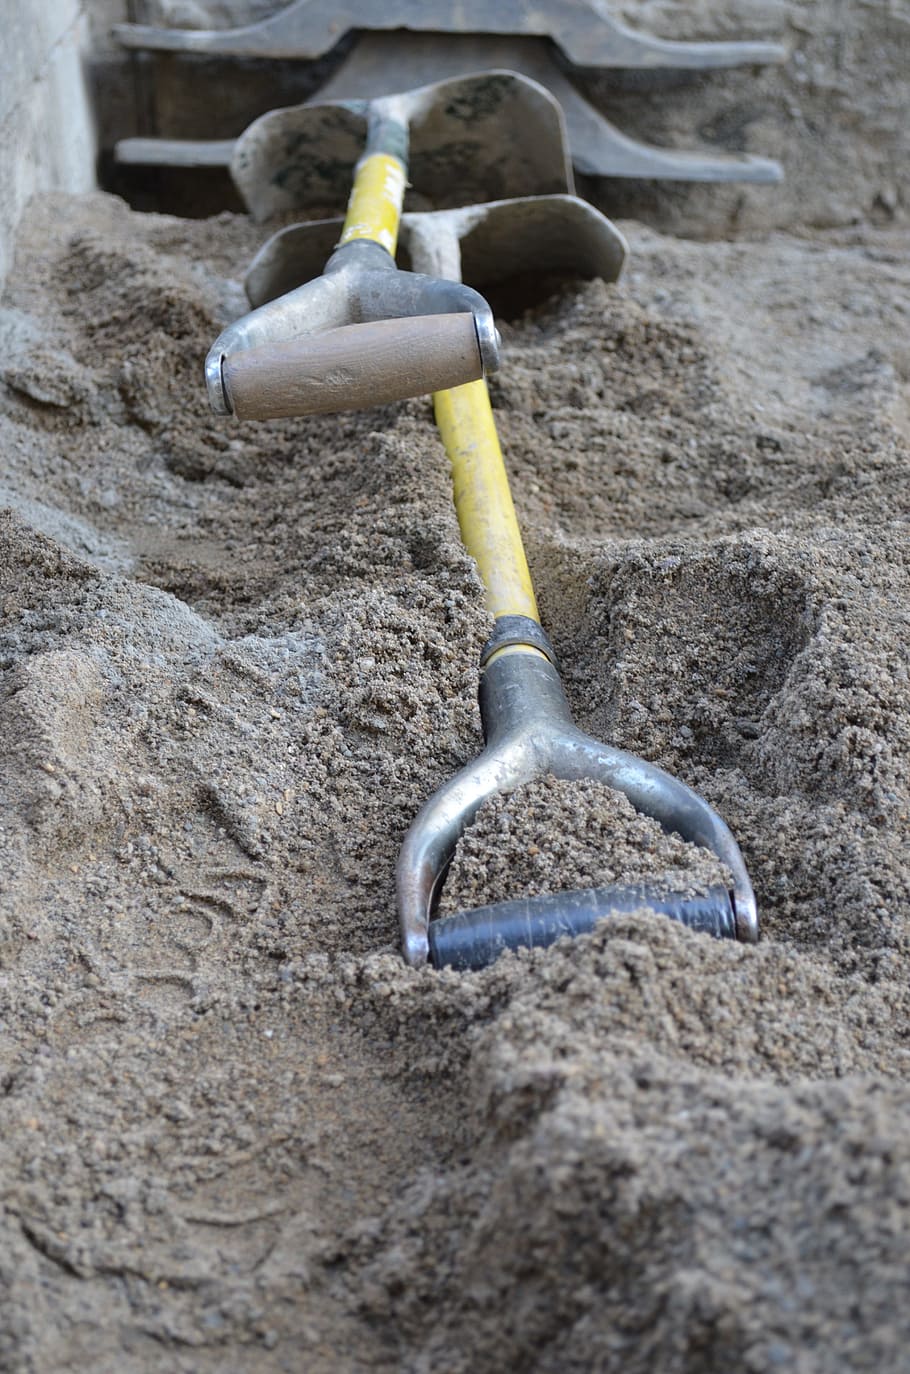 two gray shovels, Shovels, Spades, shoveling, digging, sand, excavation, work, tool, construction